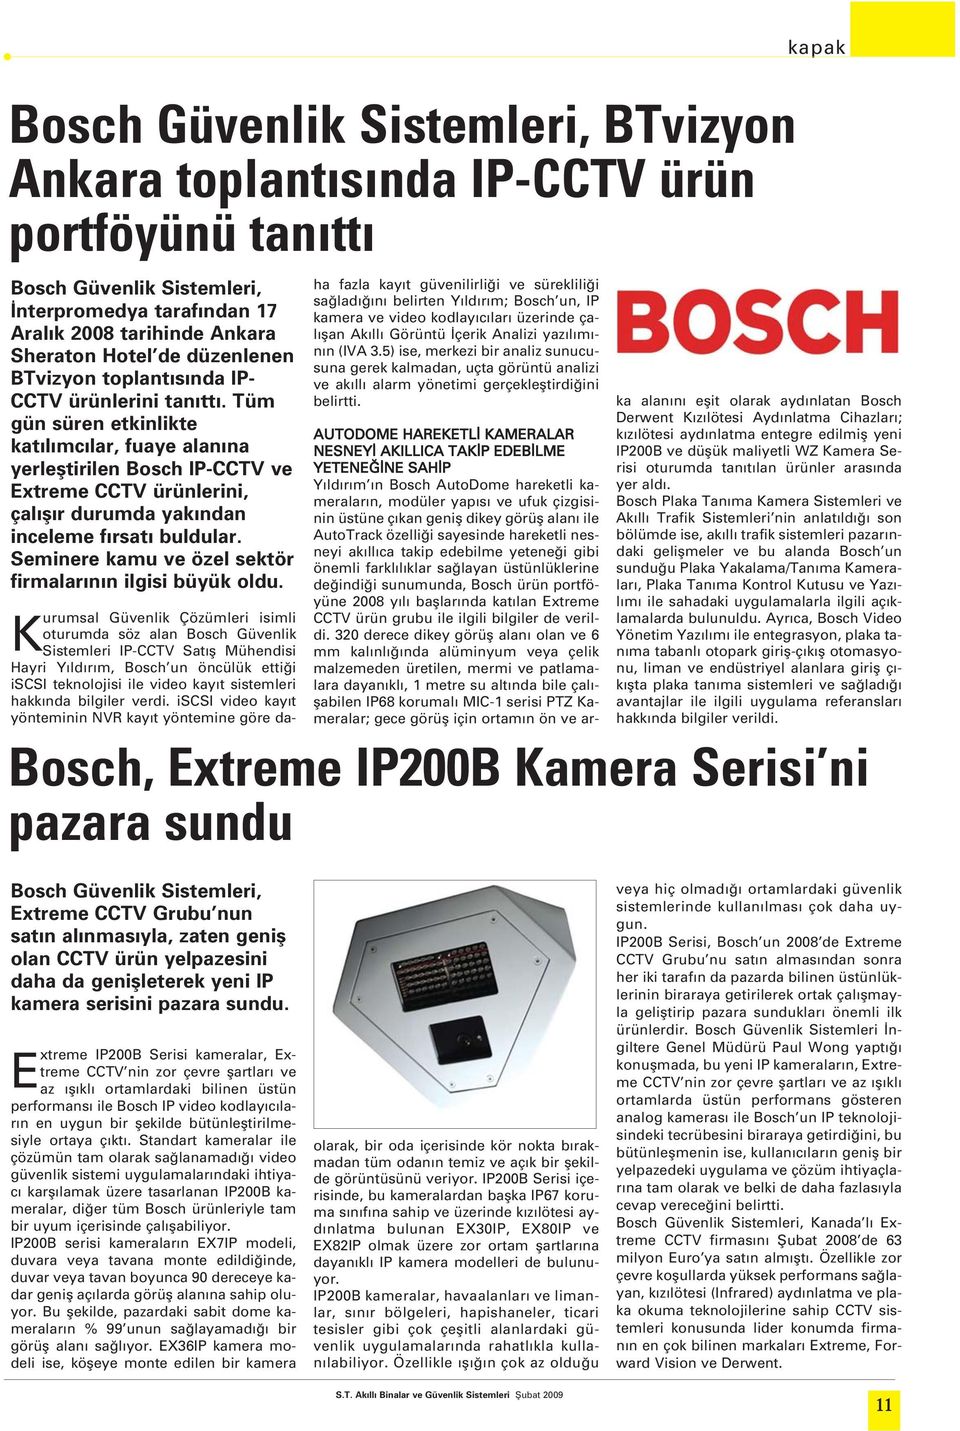 Tüm gün süren etkinlikte kat l mc lar, fuaye alan na yerlefltirilen Bosch IP-CCTV ve Extreme CCTV ürünlerini, çal fl r durumda yak ndan inceleme f rsat buldular.